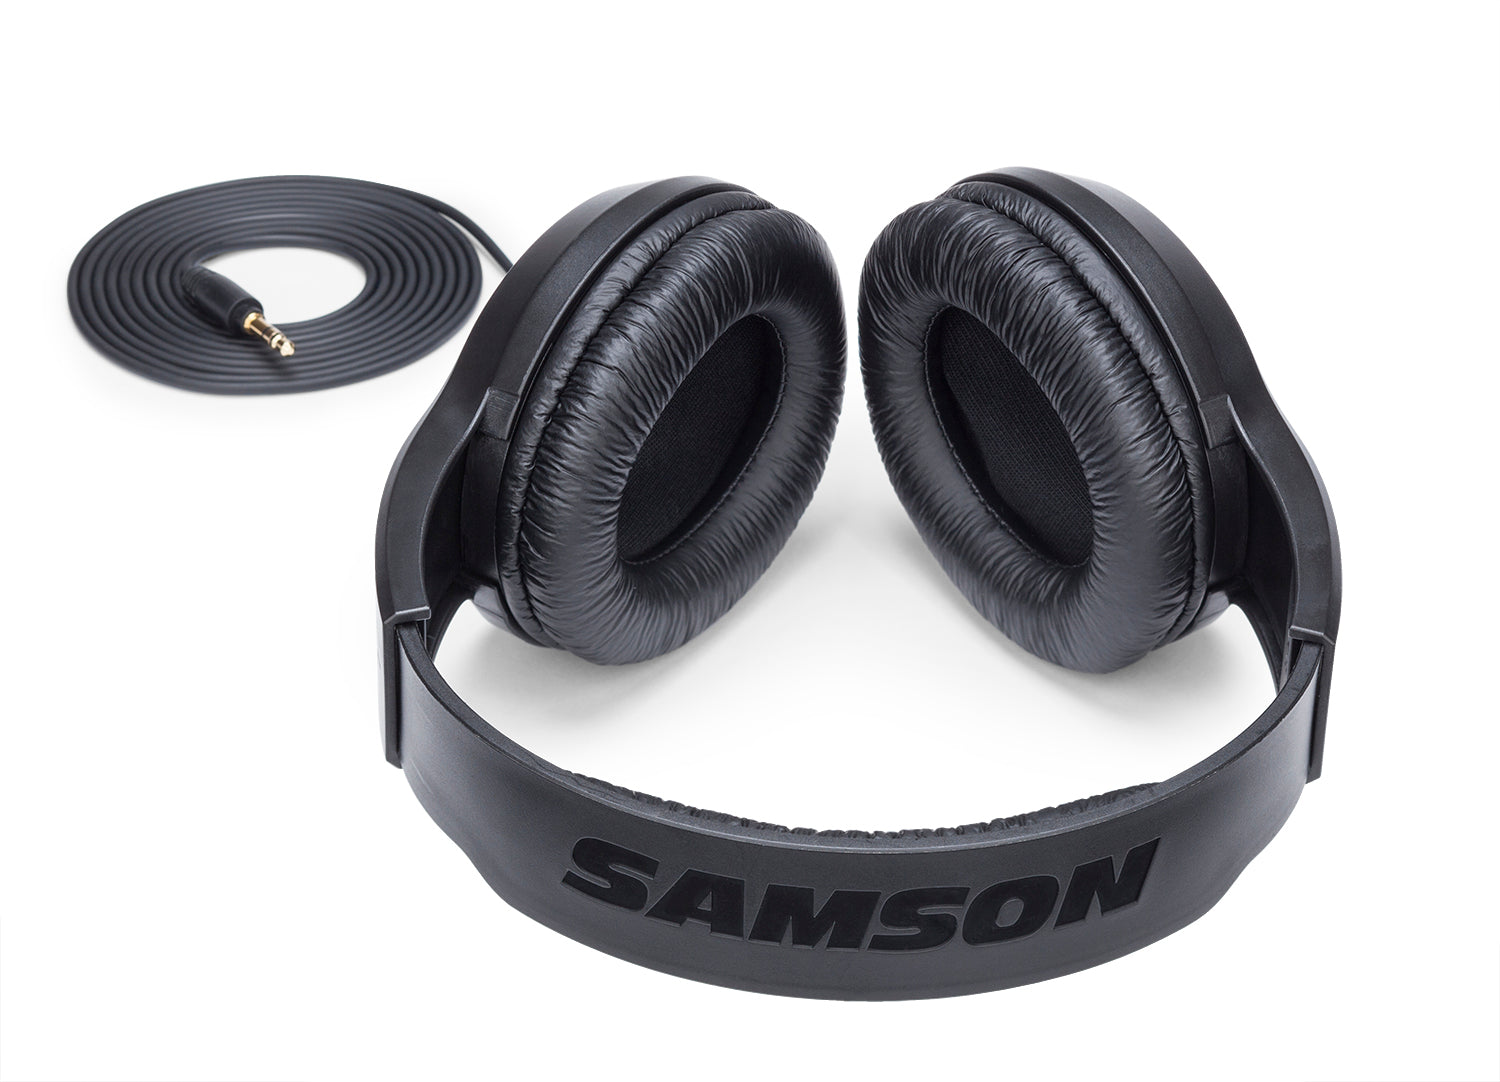 Samson SR350 Over-Ear 耳罩式耳機